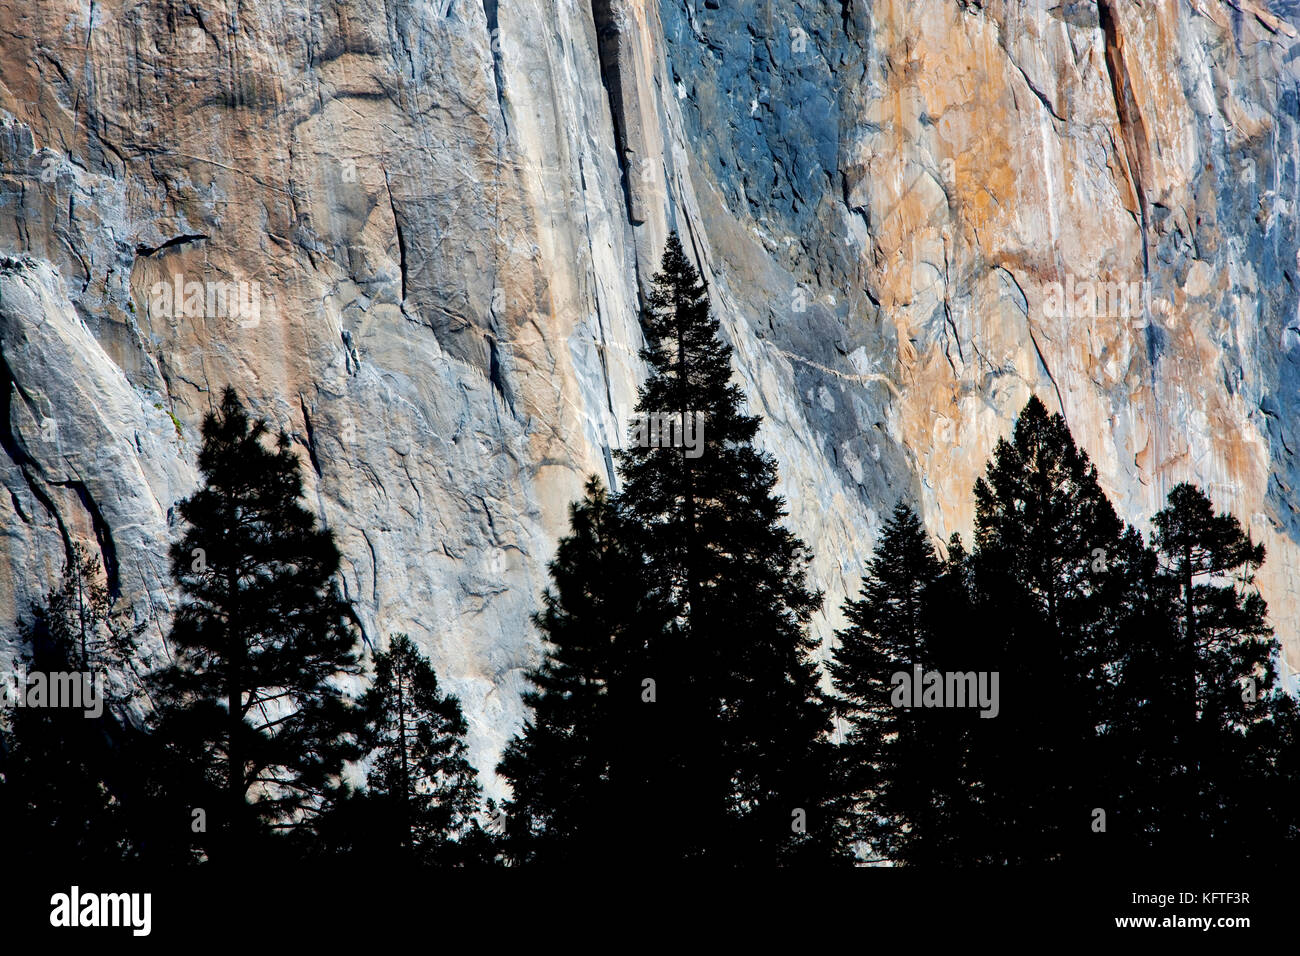 El Capitan avec silhouette d'arbres. Yosemite National Park, Californie Banque D'Images